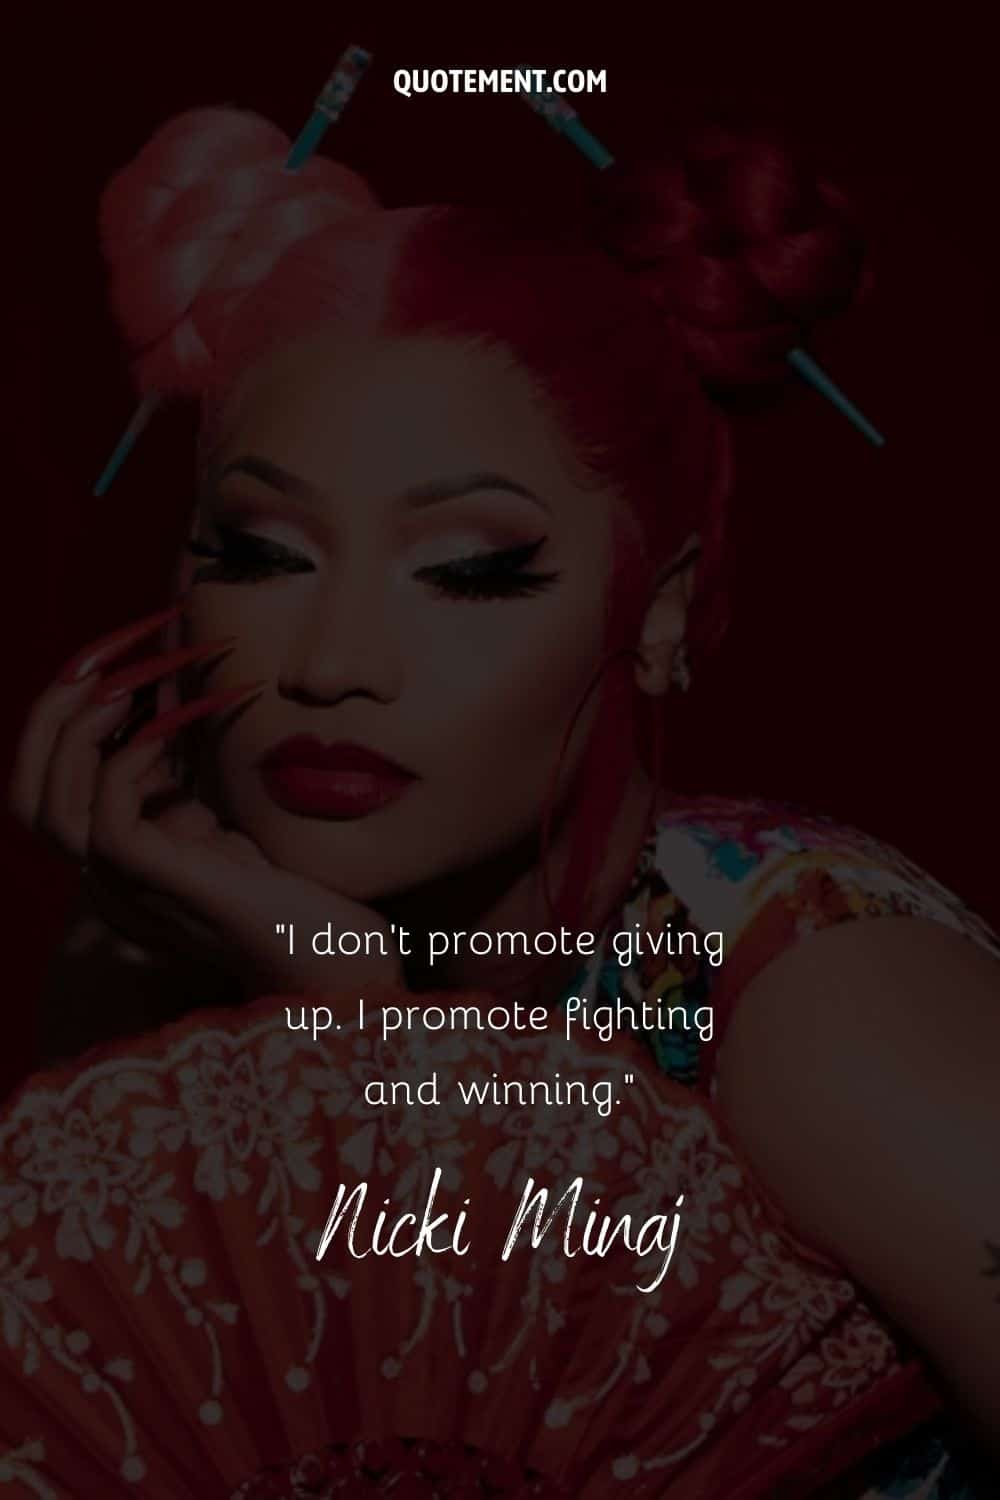 Cita motivadora de Nicki Minaj sobre la lucha, y su foto de fondo